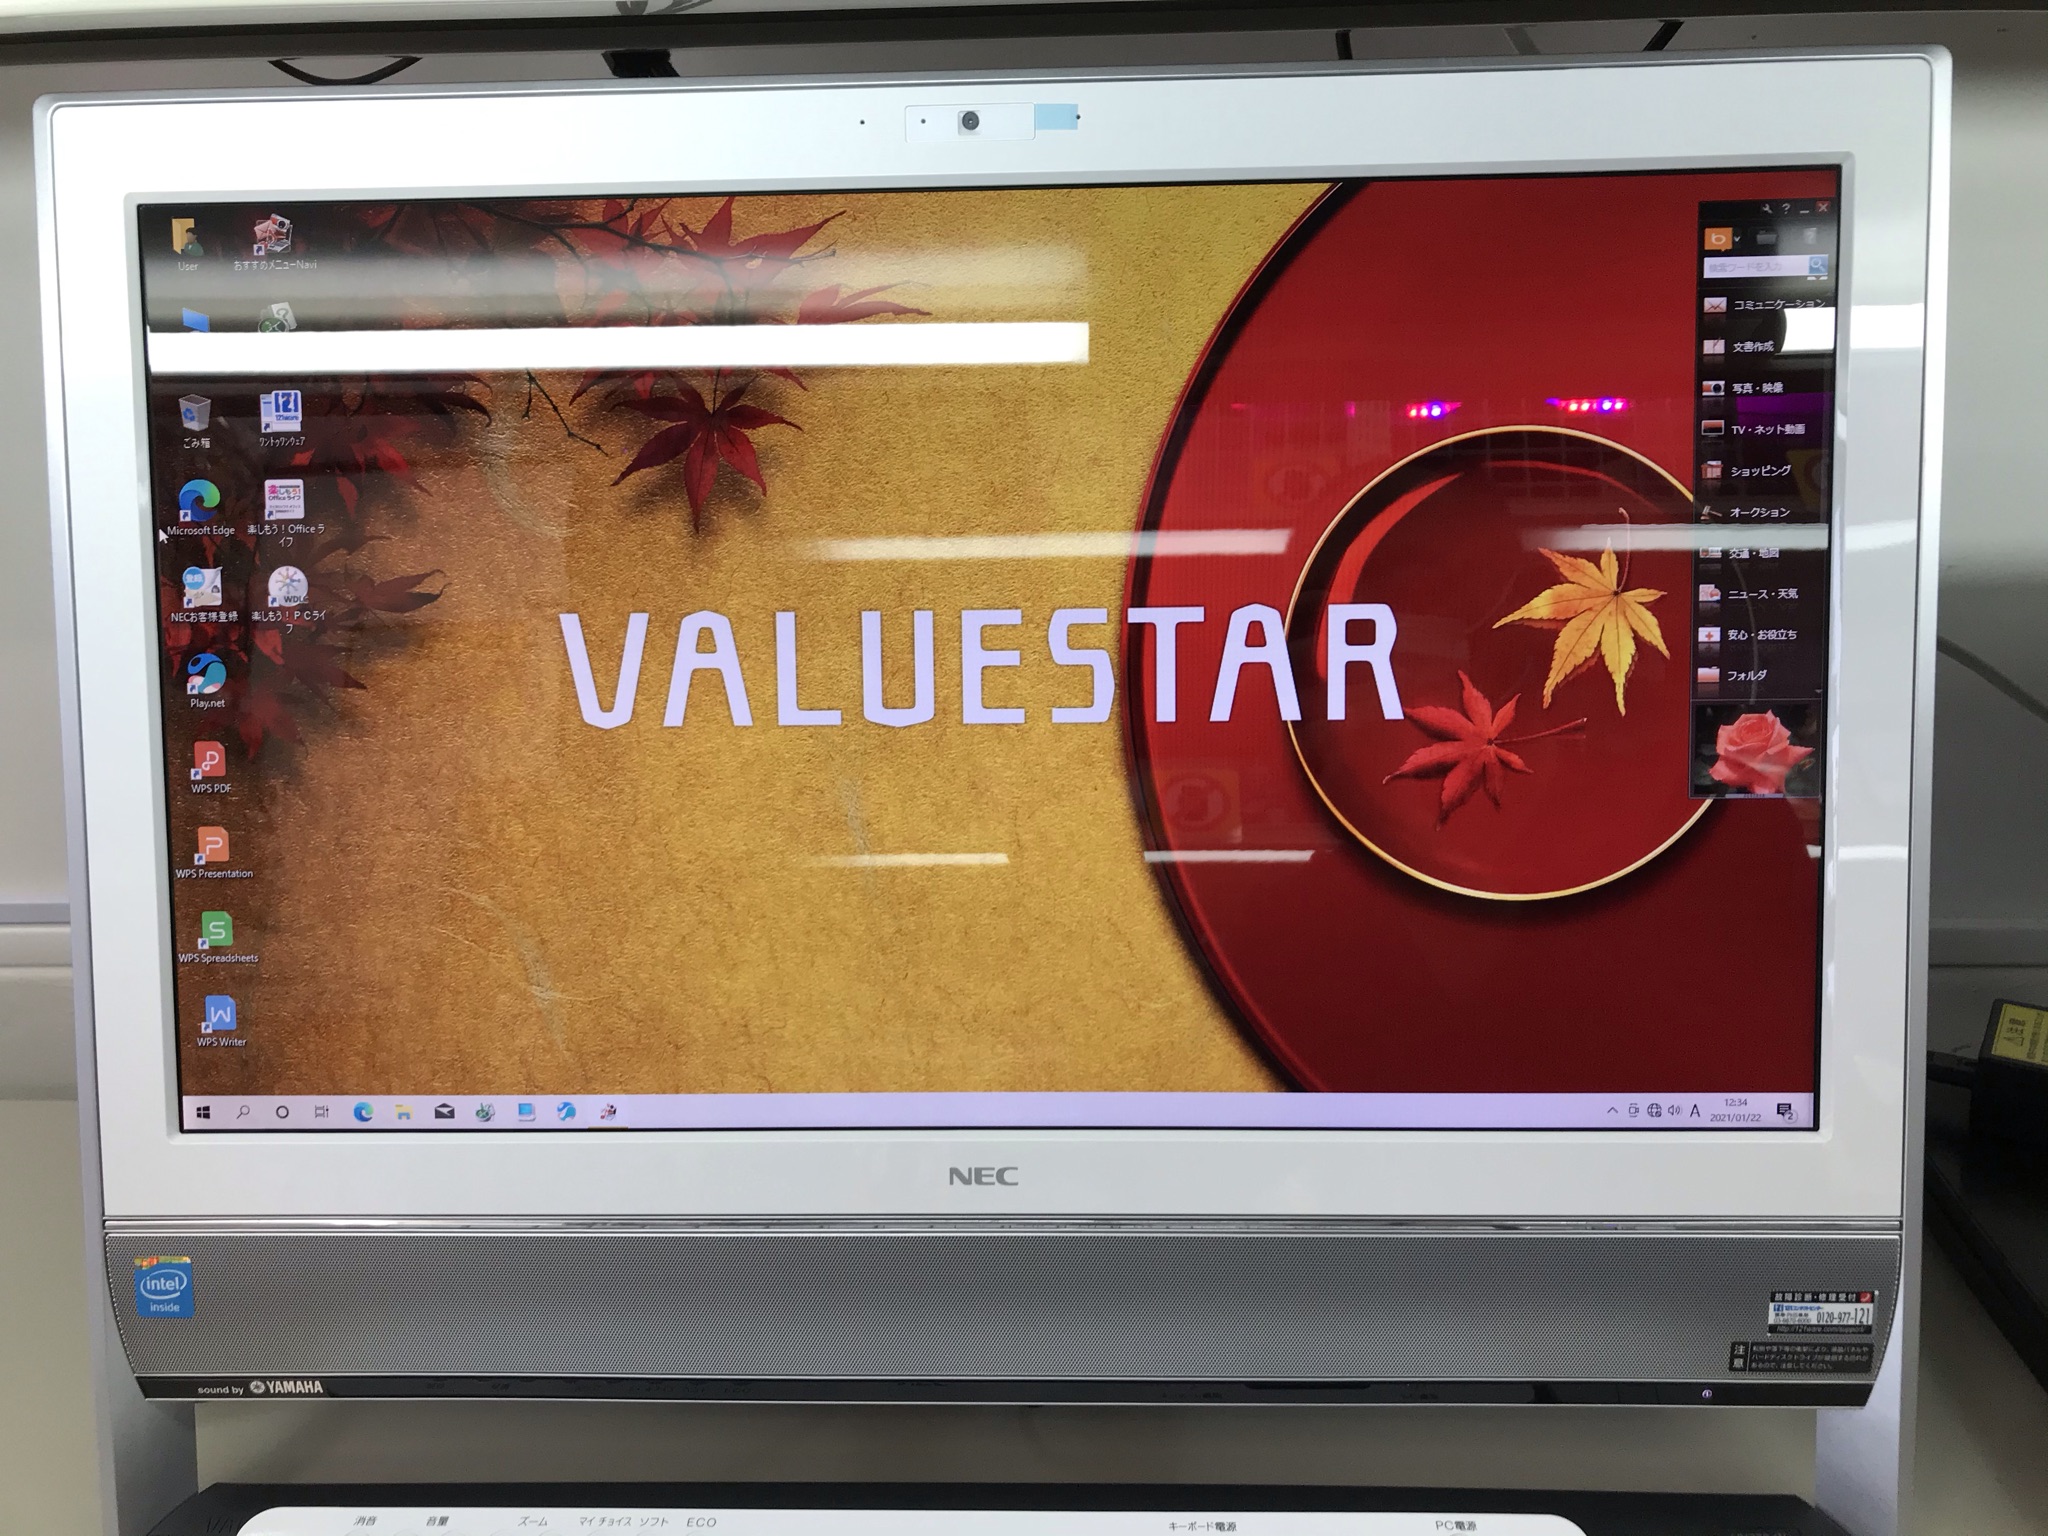 Nec Valuestar N Vn370 Nsw パソコンショップ ファインメイク